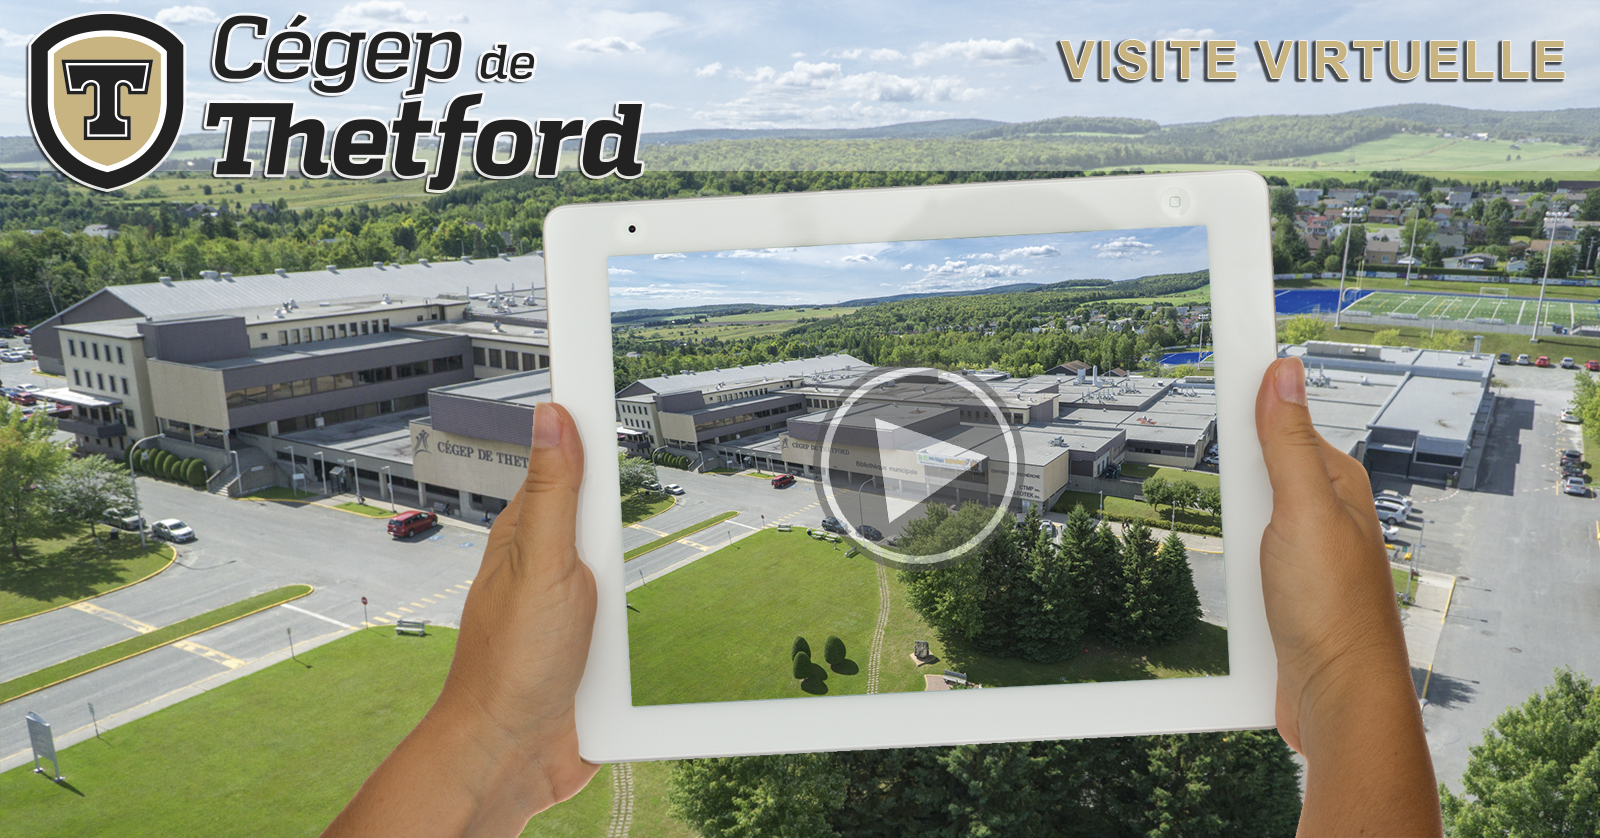 Visite virtuelle 360 degrés du Cégep de Thetford